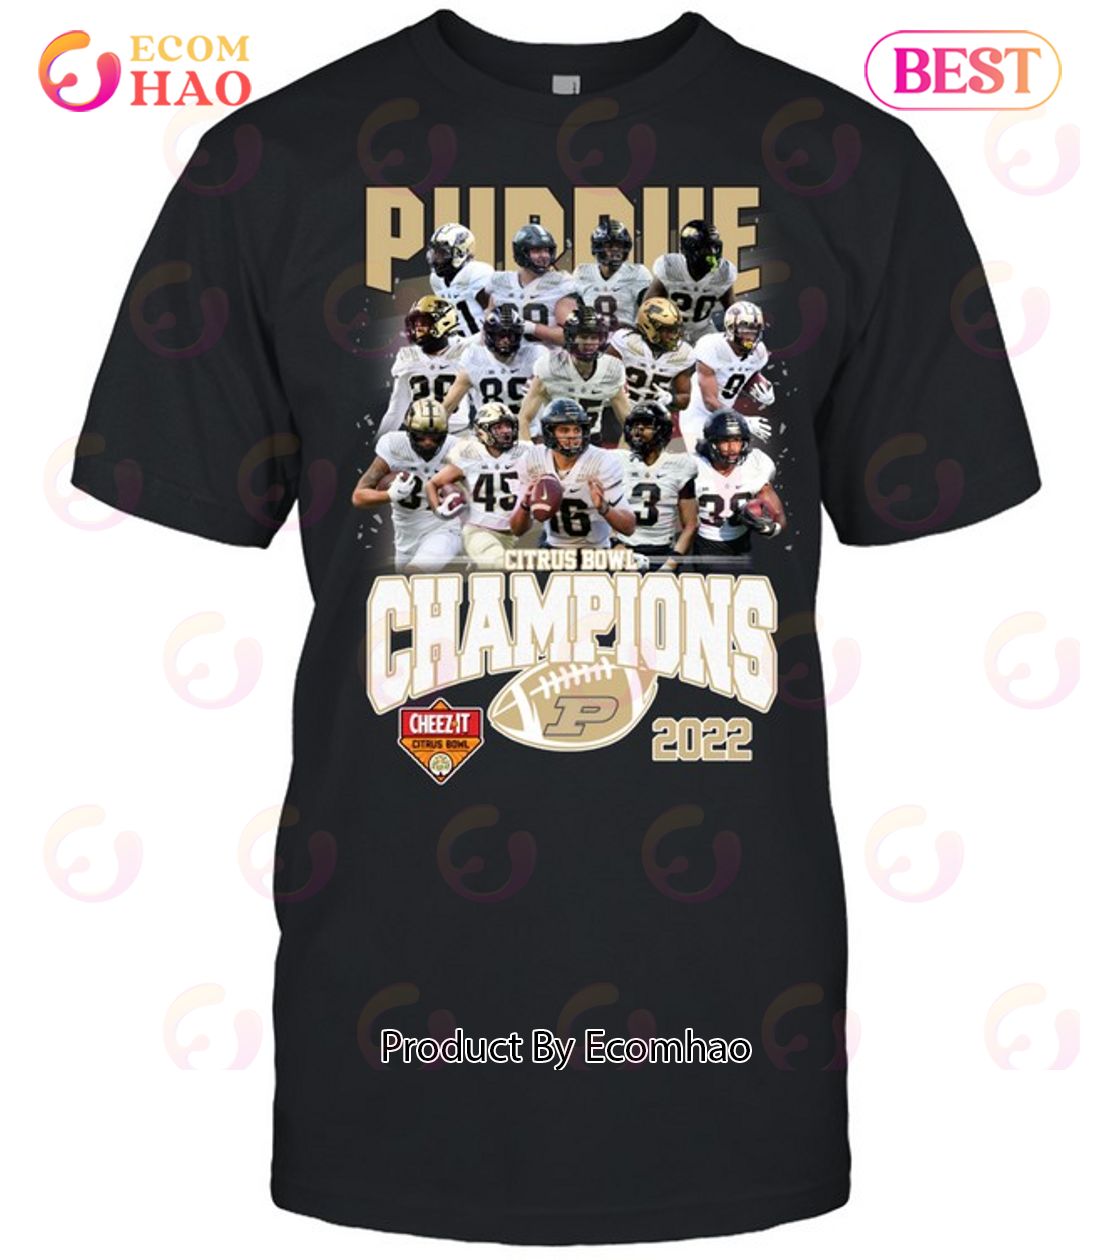 Purdue Boilermakers Football T-Shirt